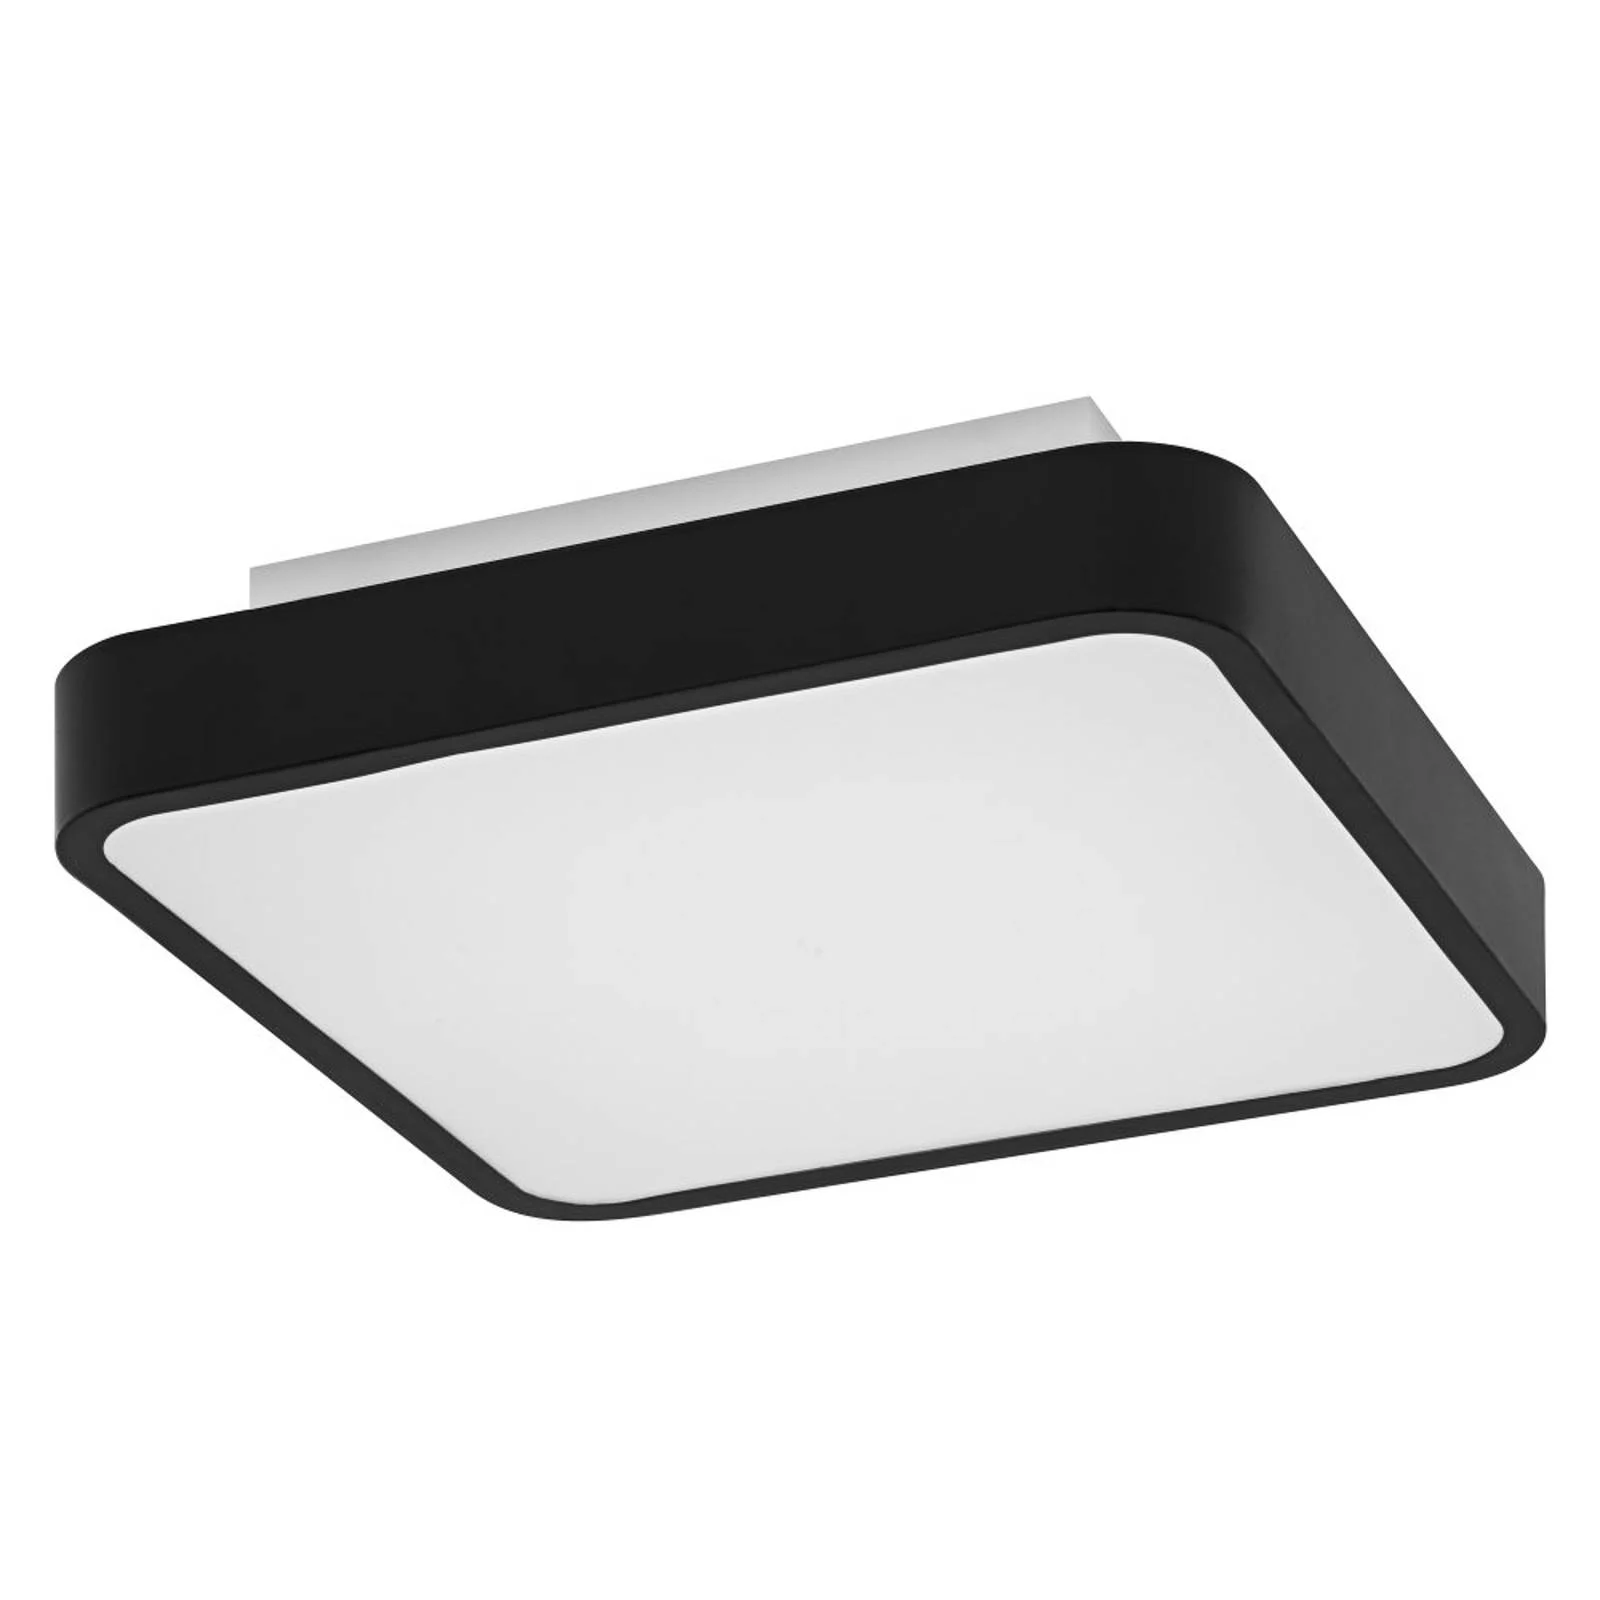 LEDVANCE SMART+ WiFi Orbis Backlight schwarz 35x35 günstig online kaufen